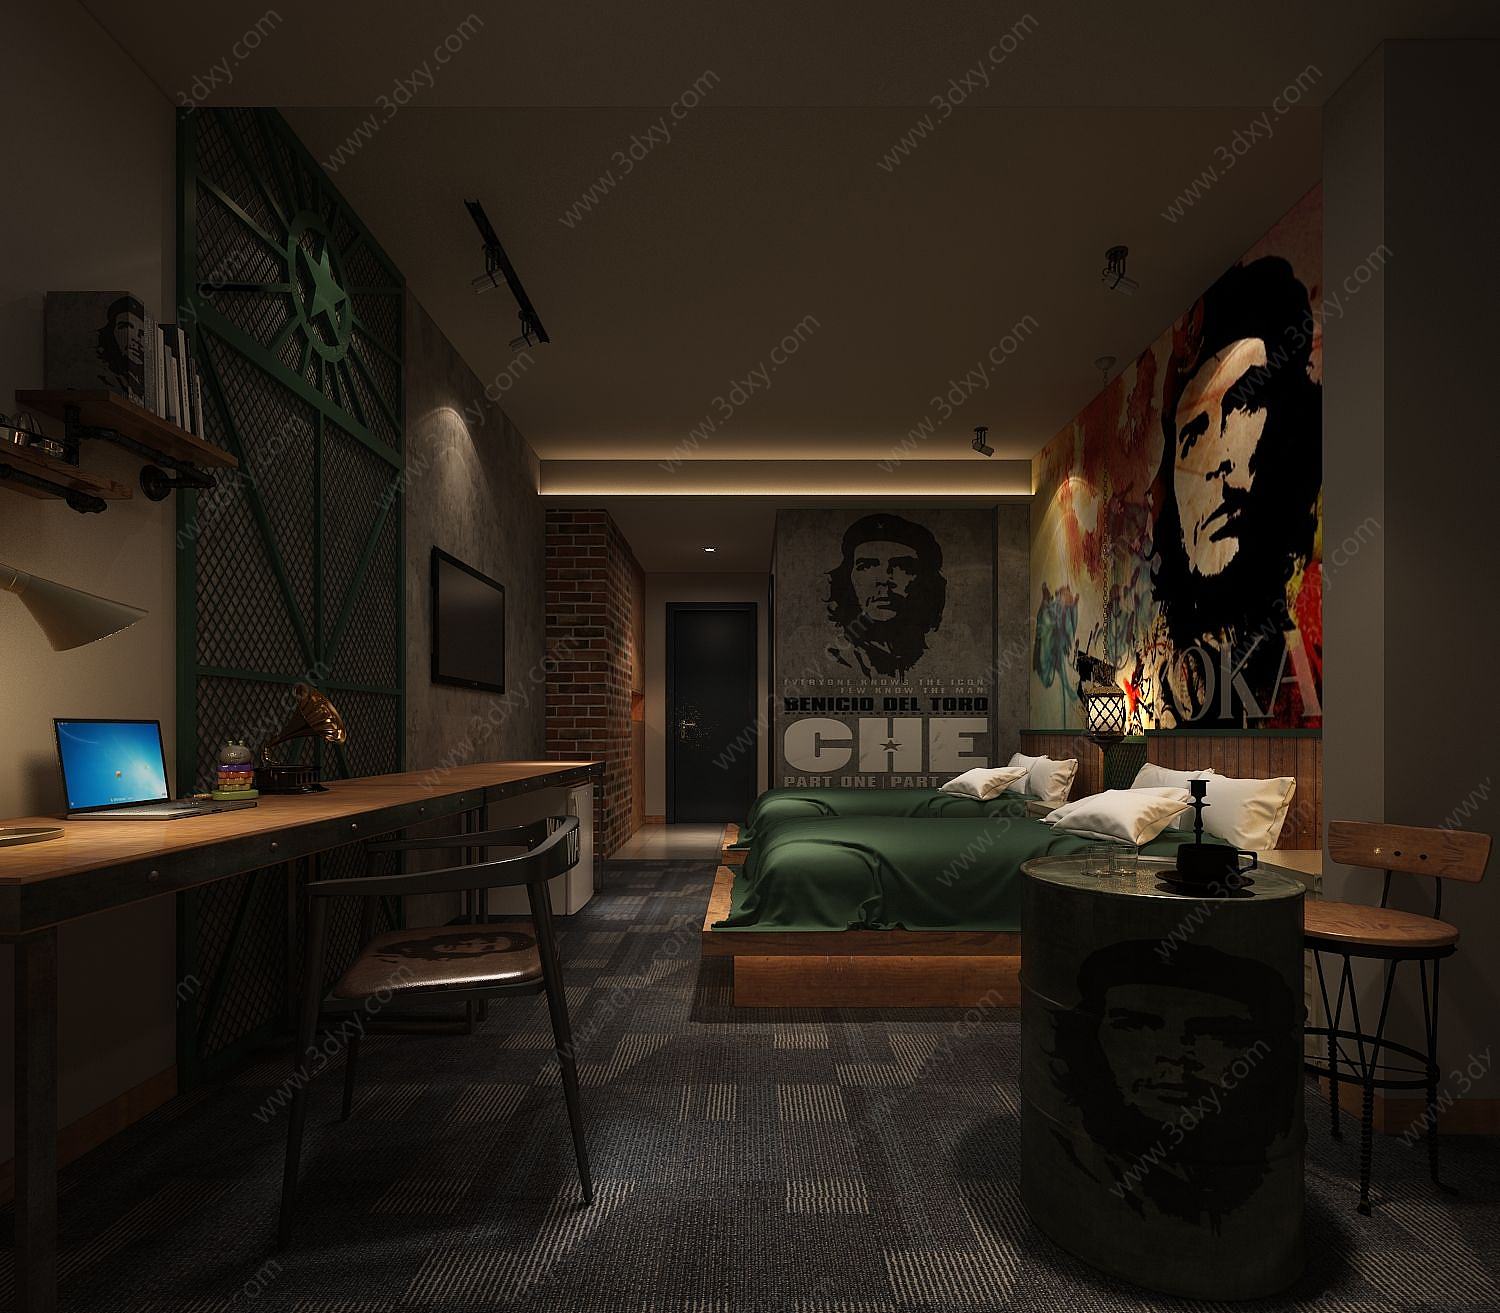 代表性人物壁画主题卧室3D模型